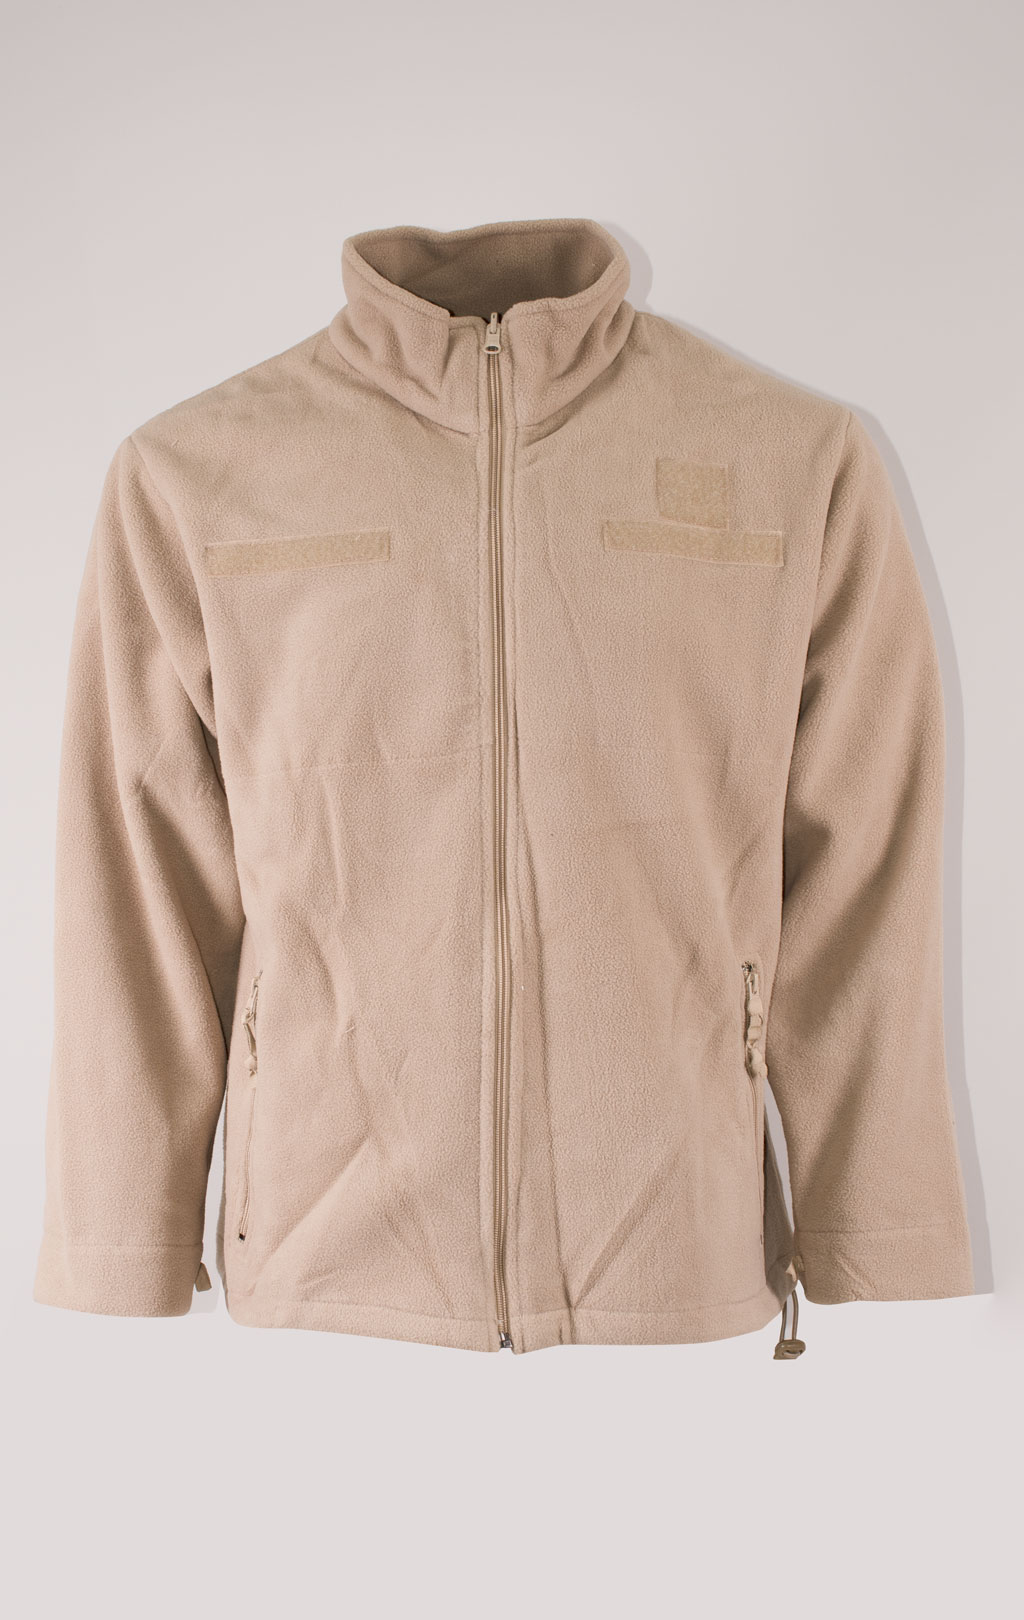 Куртка непромокаемая Tru-Spec/Guardian Spirit мембрана ecwcs с подстёжкой флис digital desert 